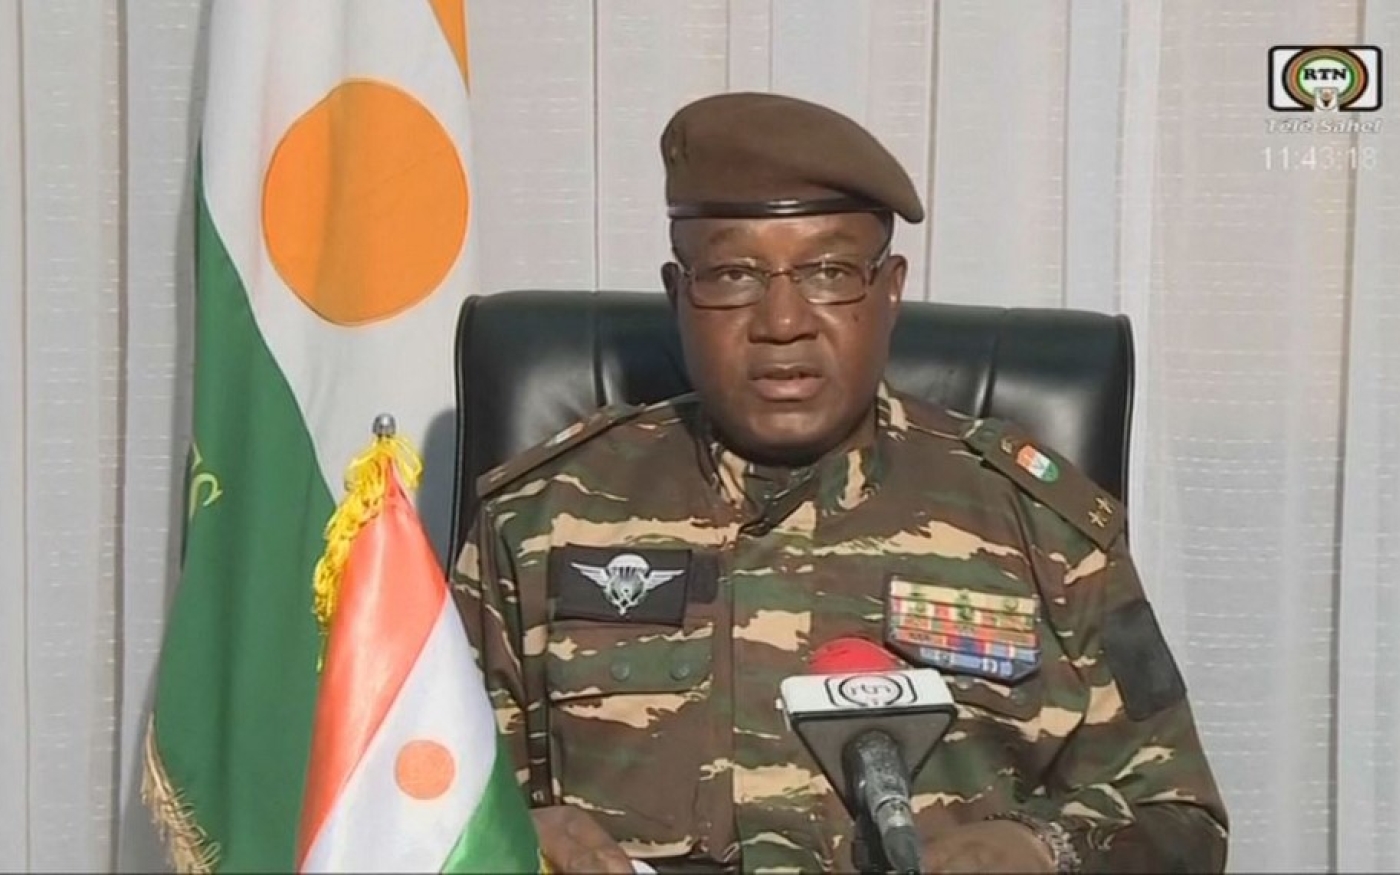 Le général Abdourahmane Tchiani, 59 ans, chef de la garde présidentielle du Niger, à l’origine de la chute du président Bazoum (AFP)